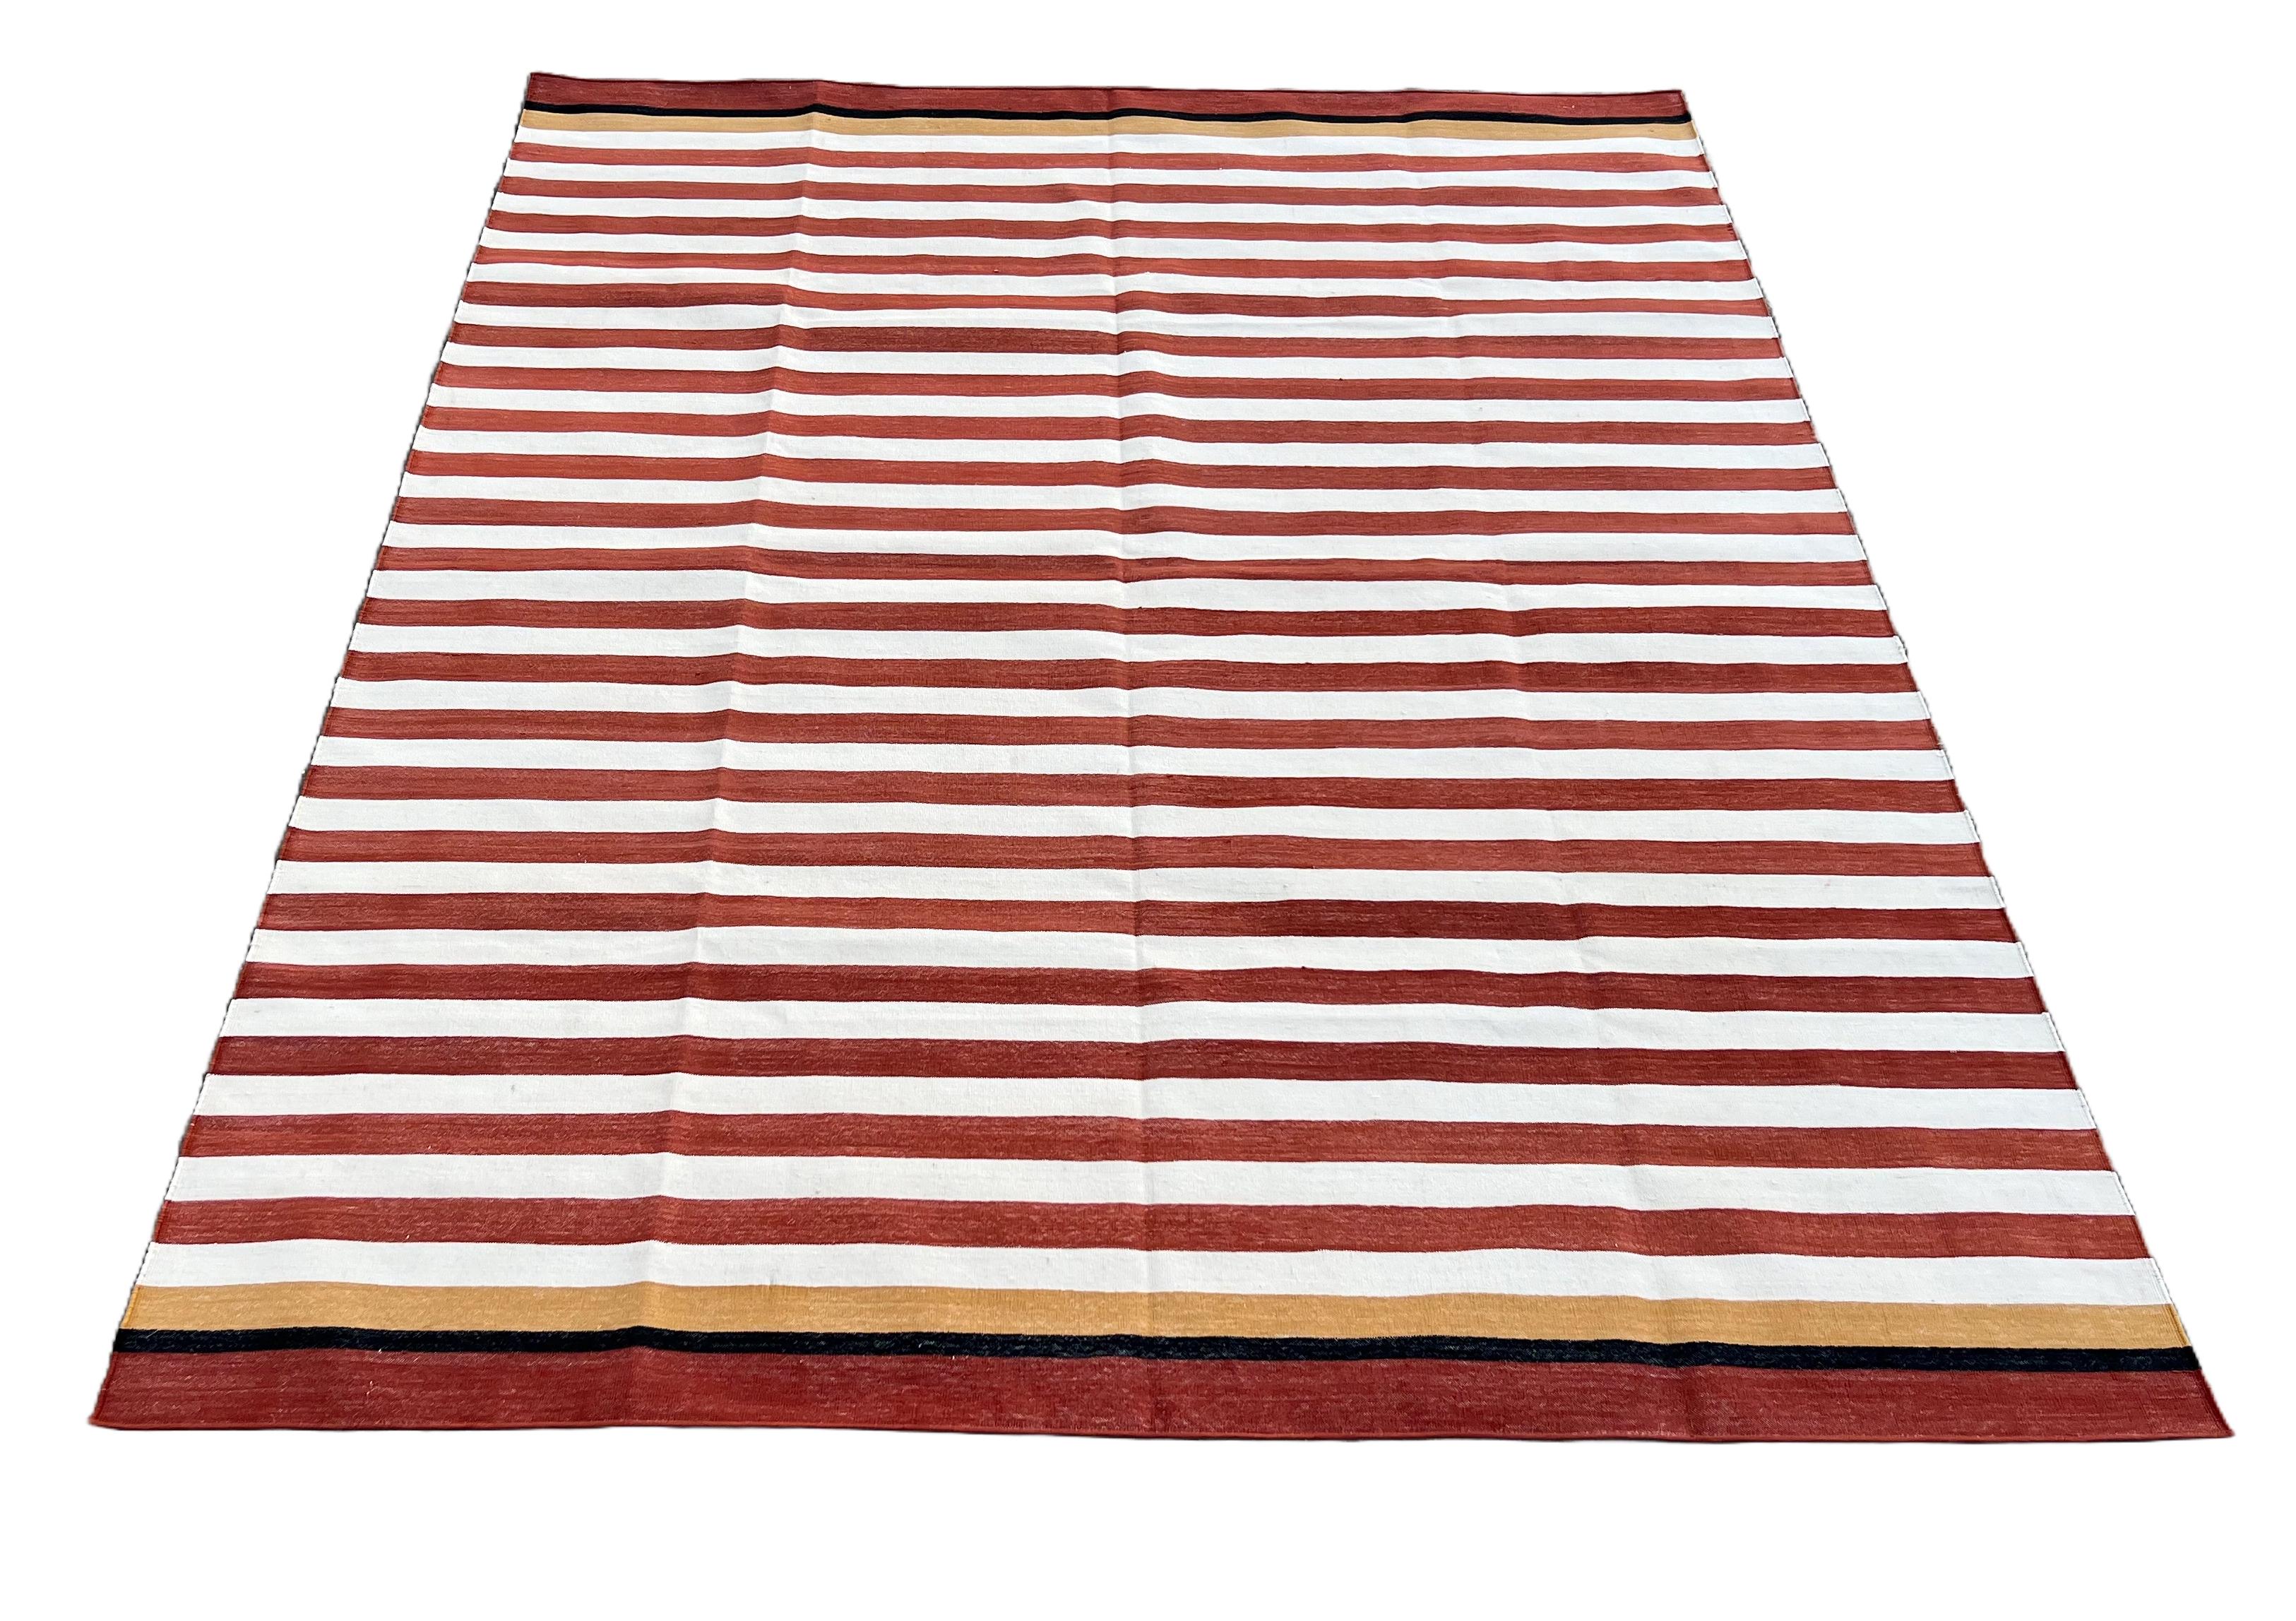 Baumwolle pflanzlich gefärbt Terrakotta Rot, Creme, Gelb und Schwarz gestreift indischen Dhurrie Teppich-6'x9' 
Diese speziellen flachgewebten Dhurries werden aus 15-fachem Garn aus 100% Baumwolle handgewebt. Aufgrund der speziellen